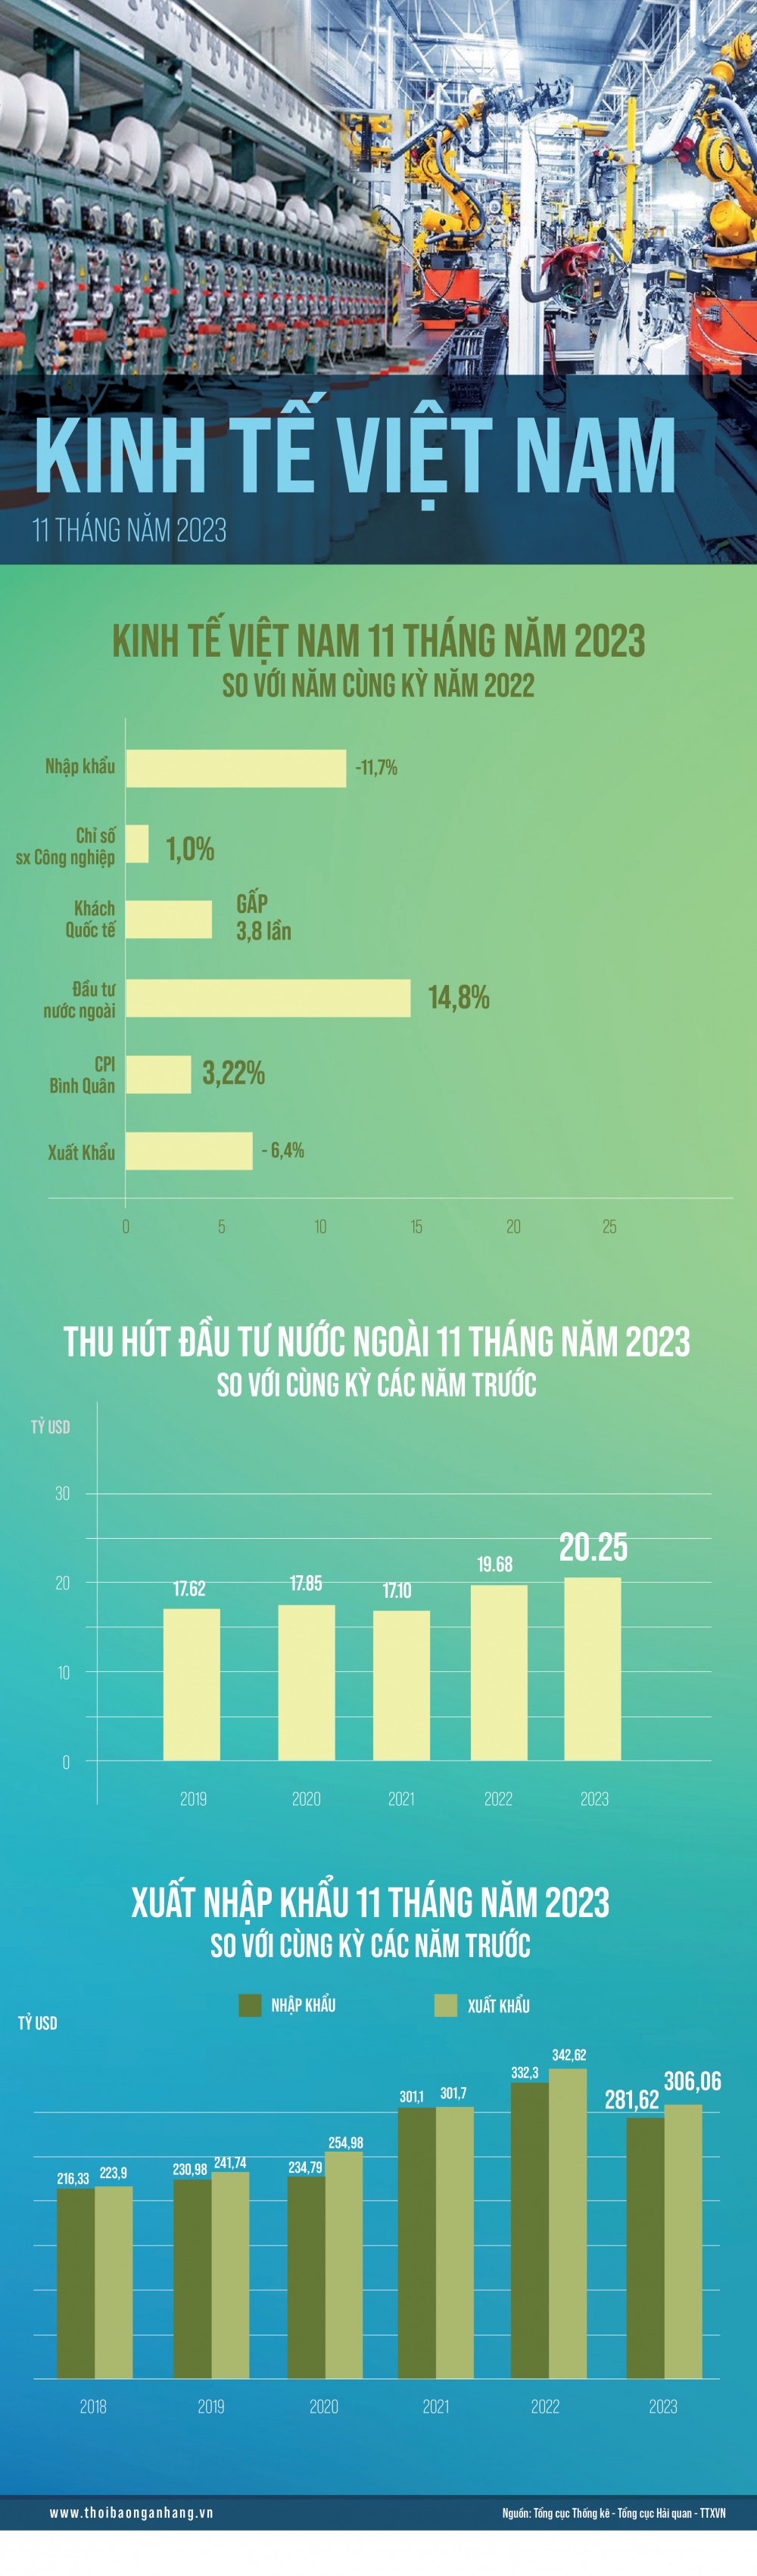 [Infographic] Kinh tế Việt Nam 11 tháng năm 2023